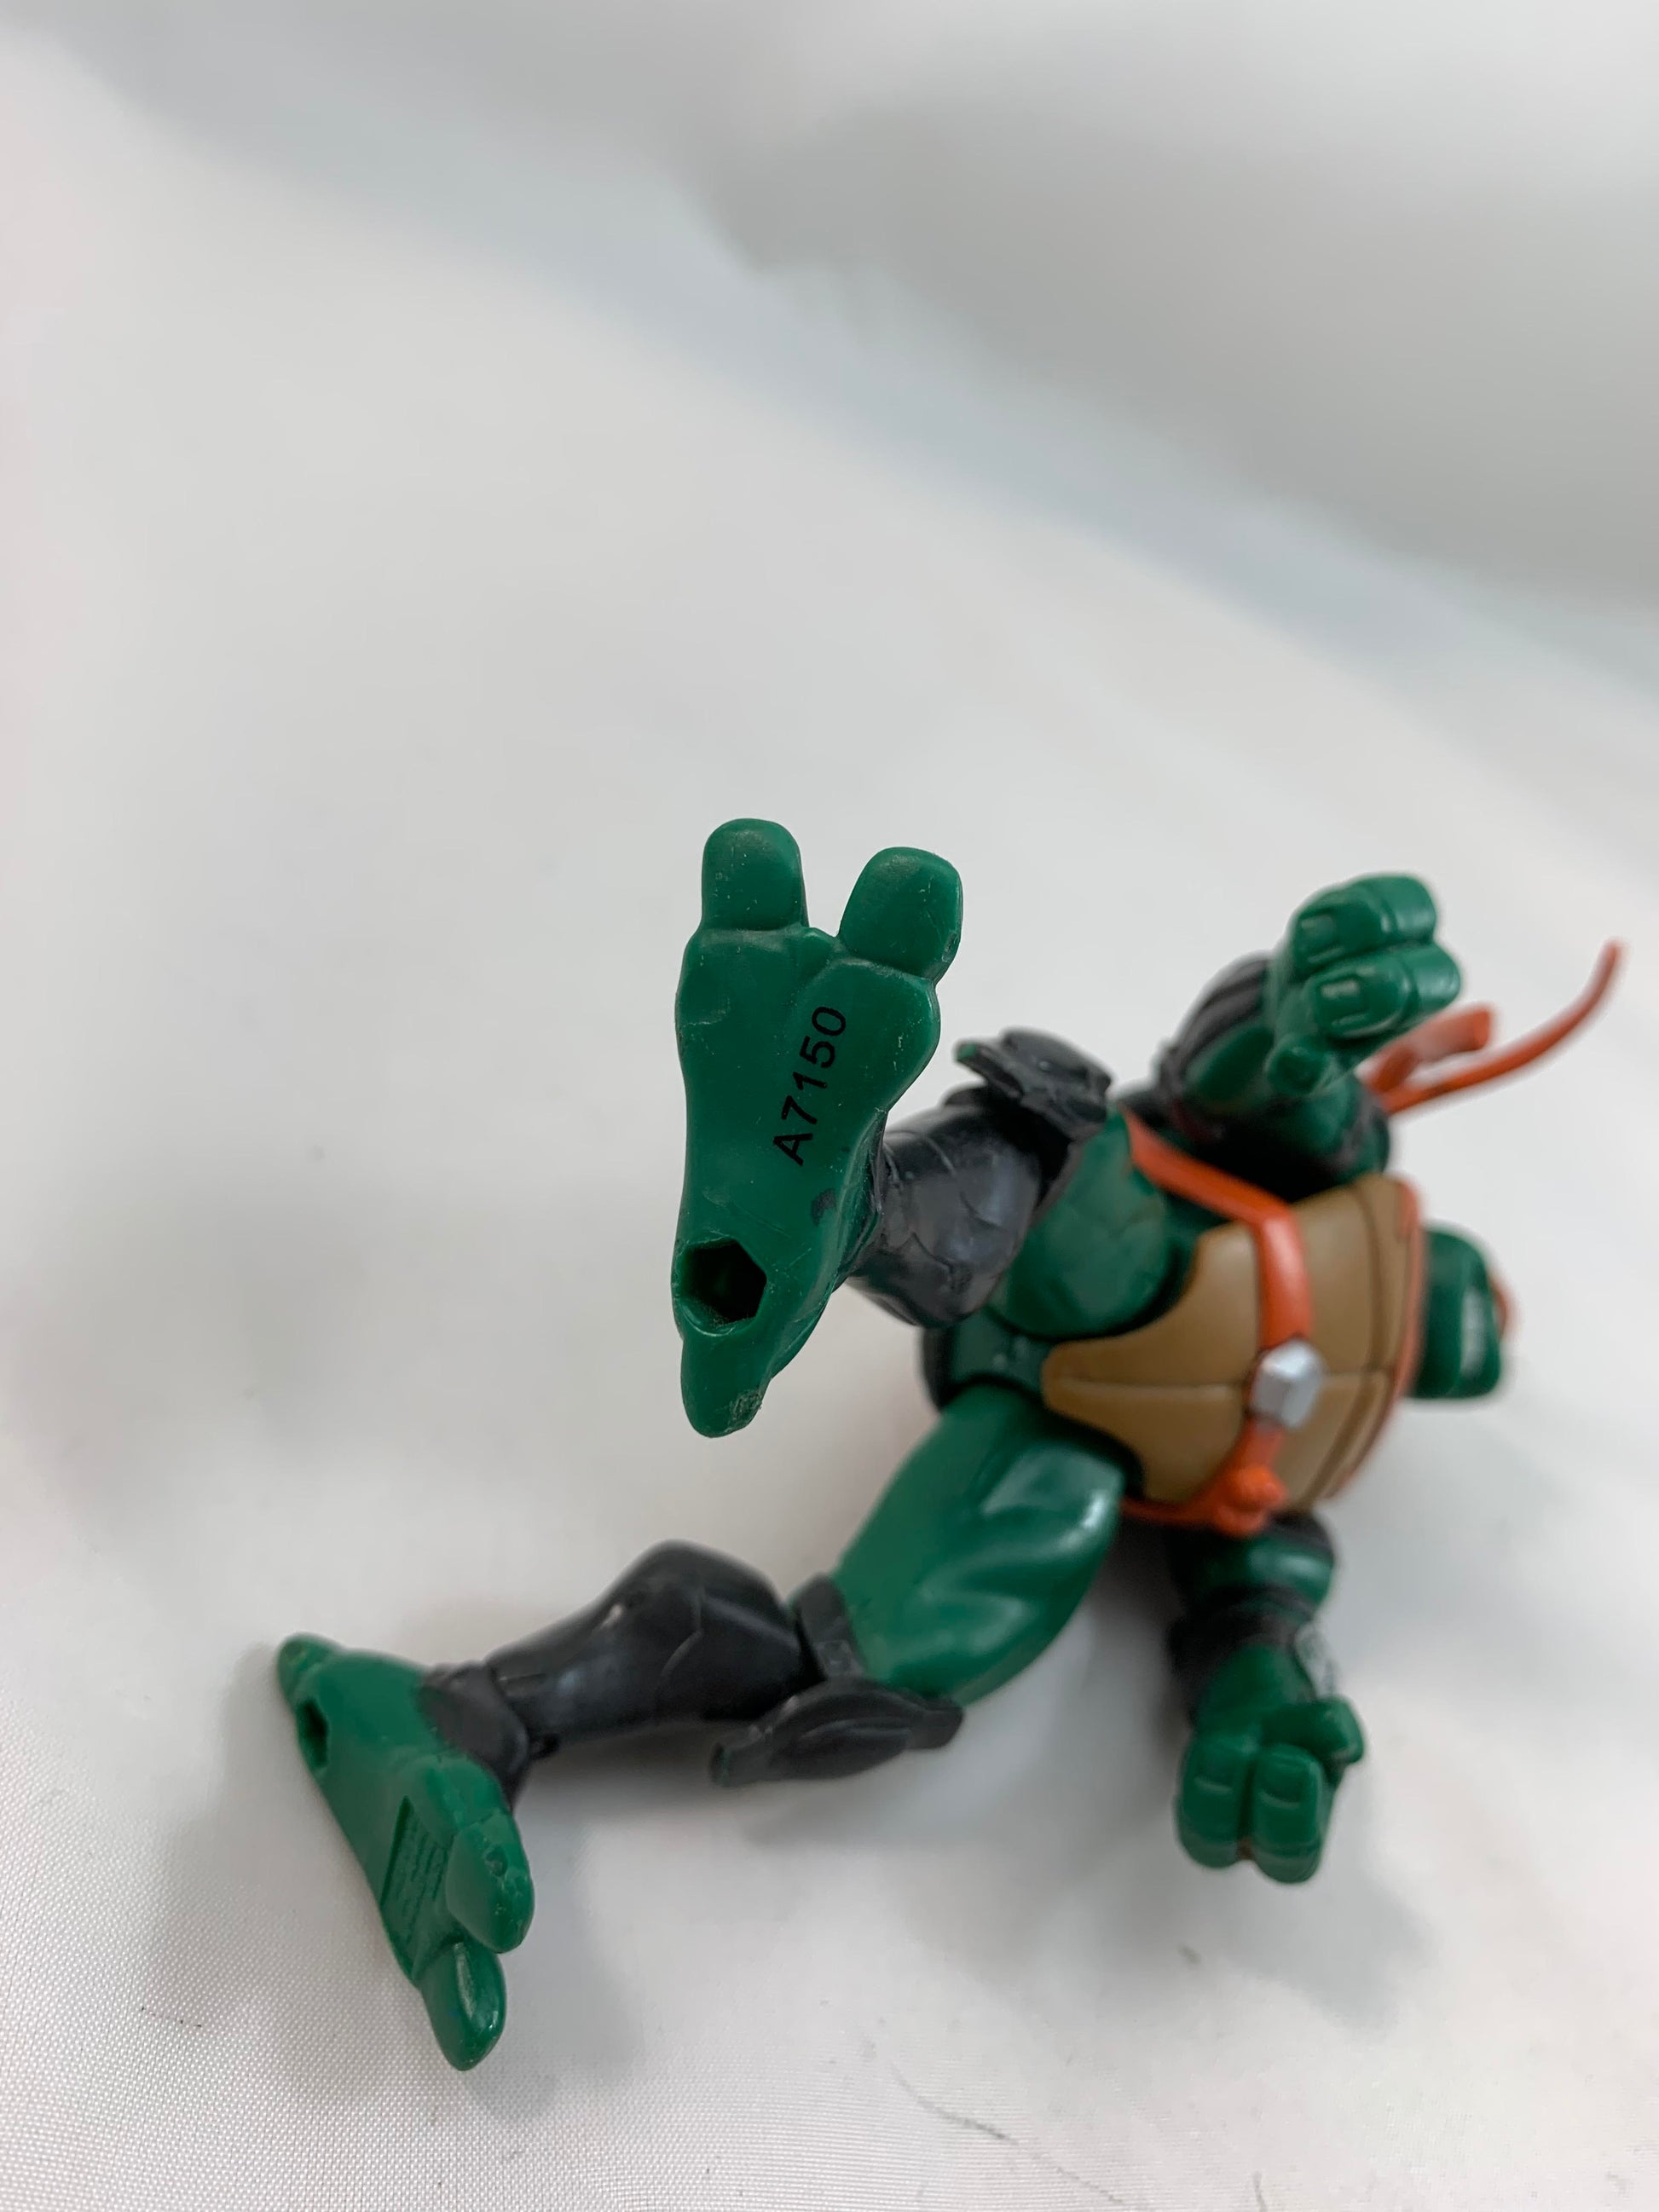 Playmates Viacom Teenage Mutant Ninja Turtles TMNT Fast Forward Series Michelangelo 2006 - Loose